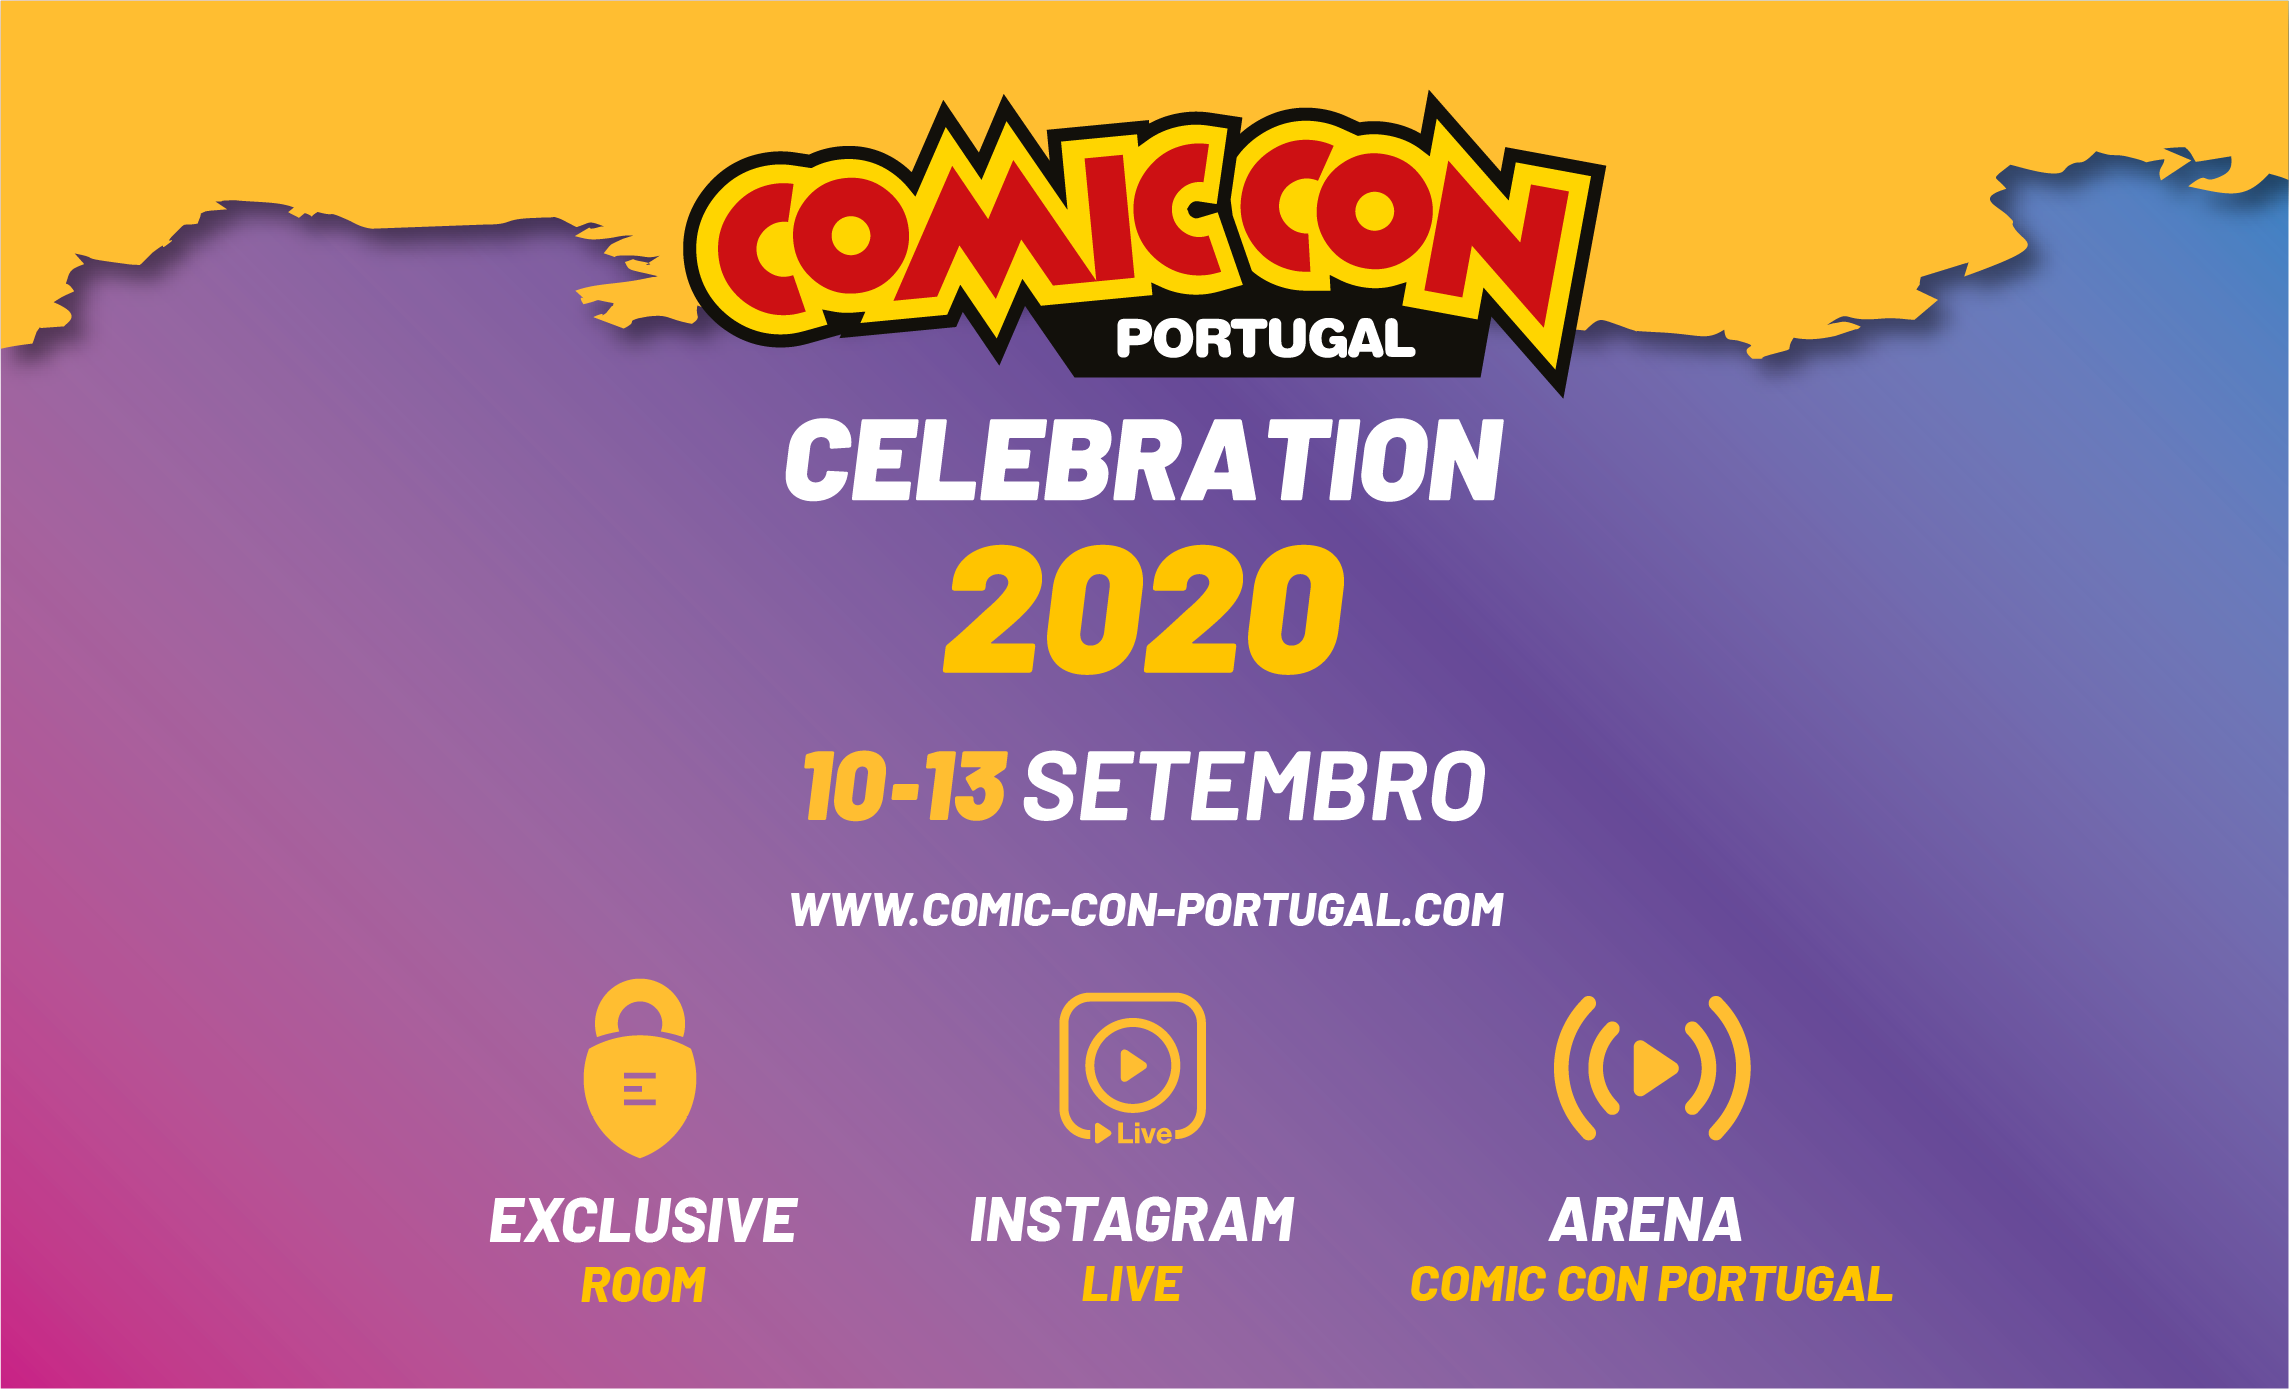 Comic Con Portugal Celebration 2020